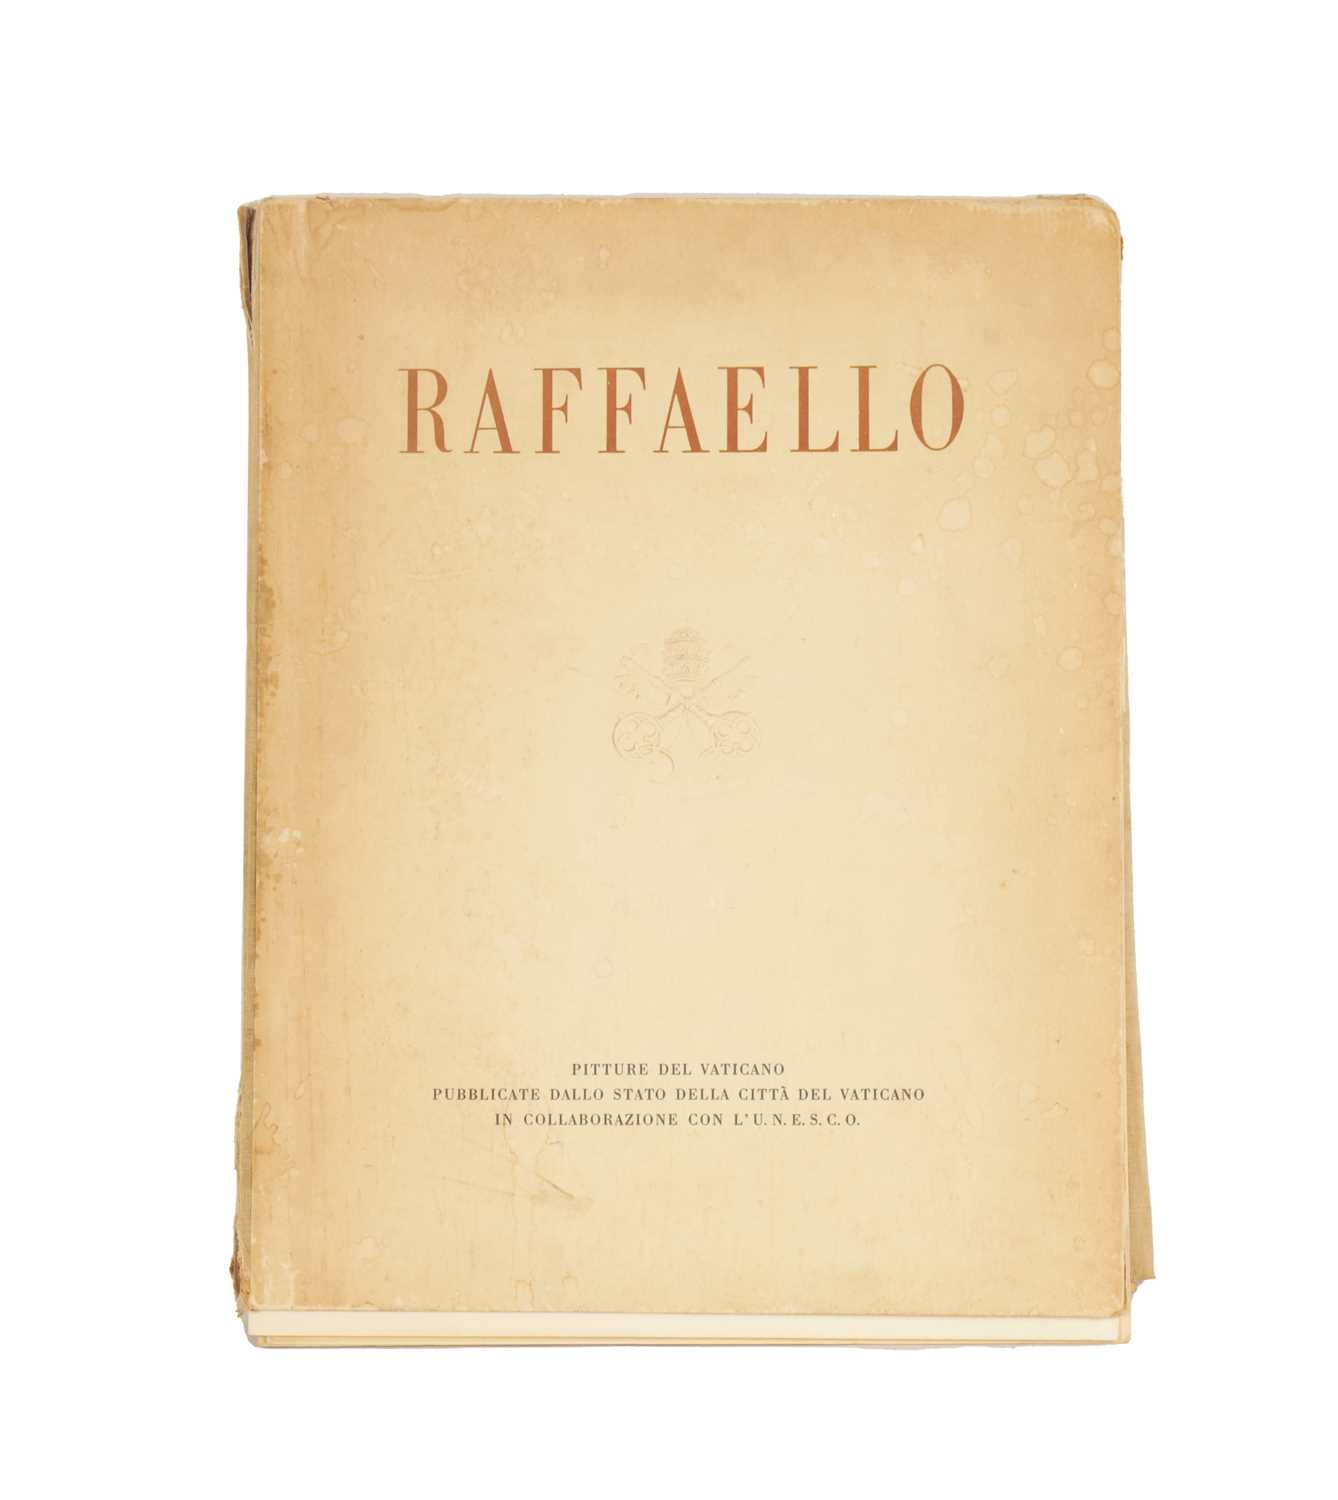 A FULLY ILLUSTRATED BOOK “RAFFEALLO PICTURE DEL VATICANO”